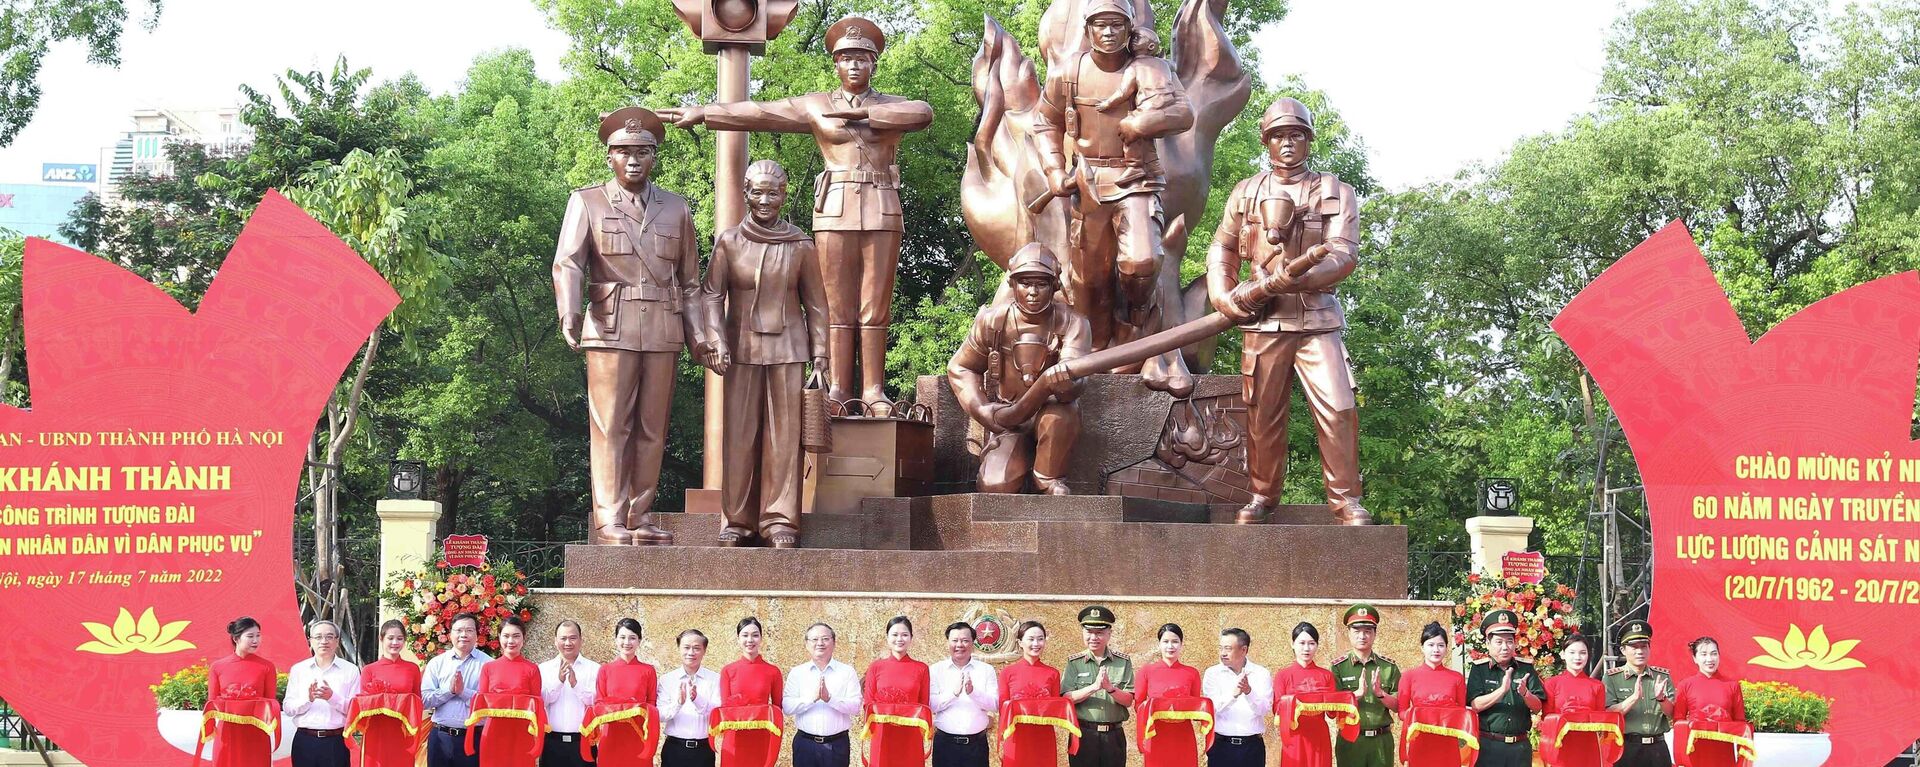 Lễ khánh thành công trình tượng đài Công an nhân dân vì dân phục vụ - Sputnik Việt Nam, 1920, 17.07.2022